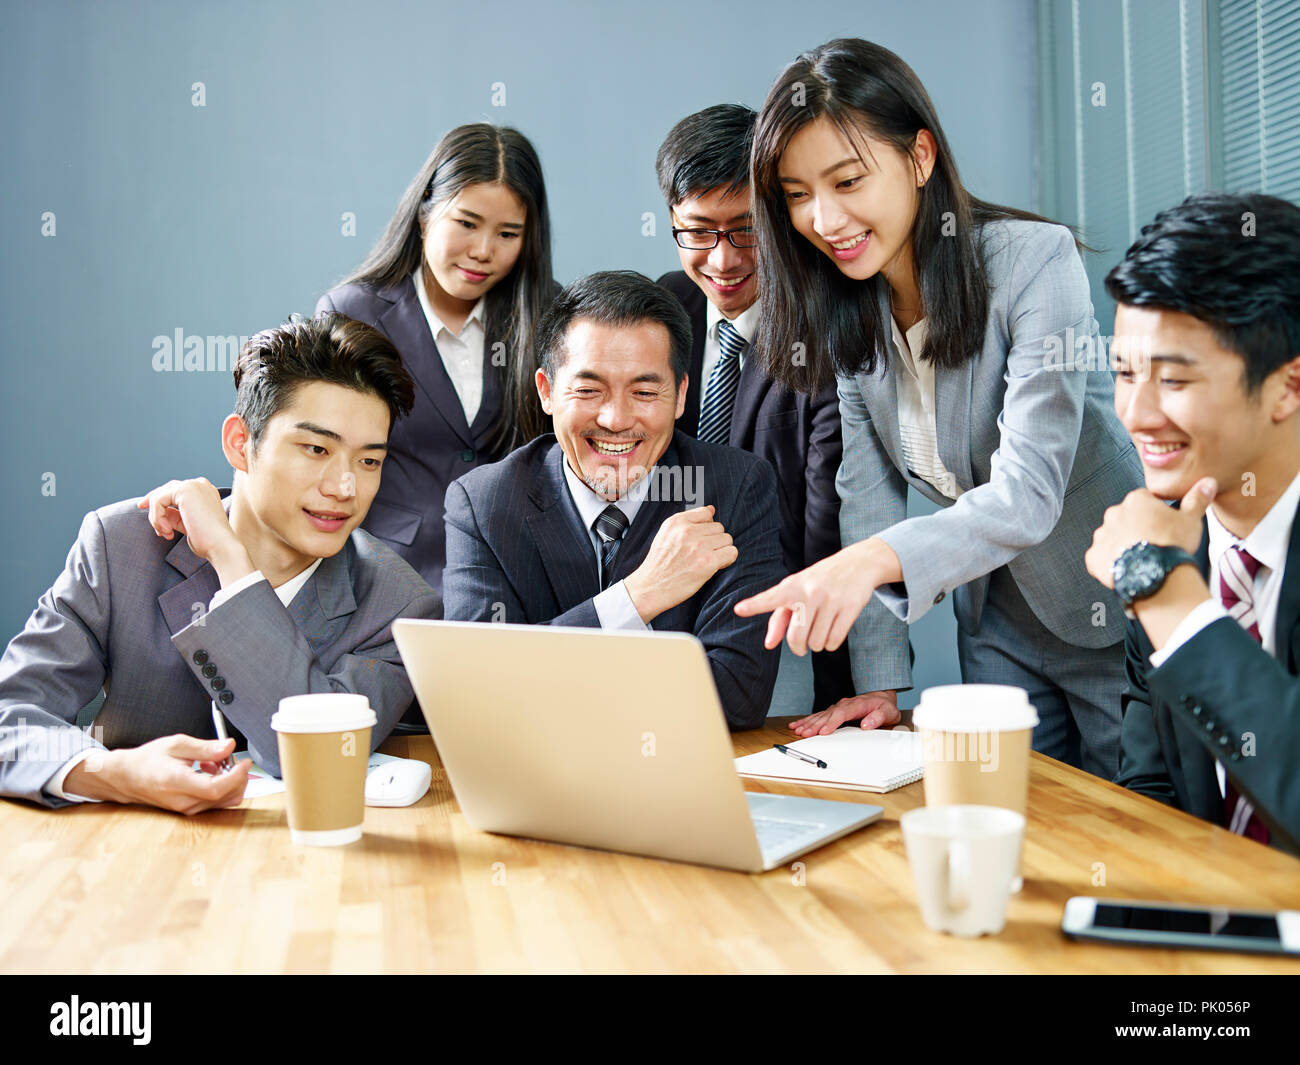 Ein Team von asiatischen Führungskräfte mit Laptop arbeiten zusammen im Büro, glücklich und lächelnd. Stockfoto